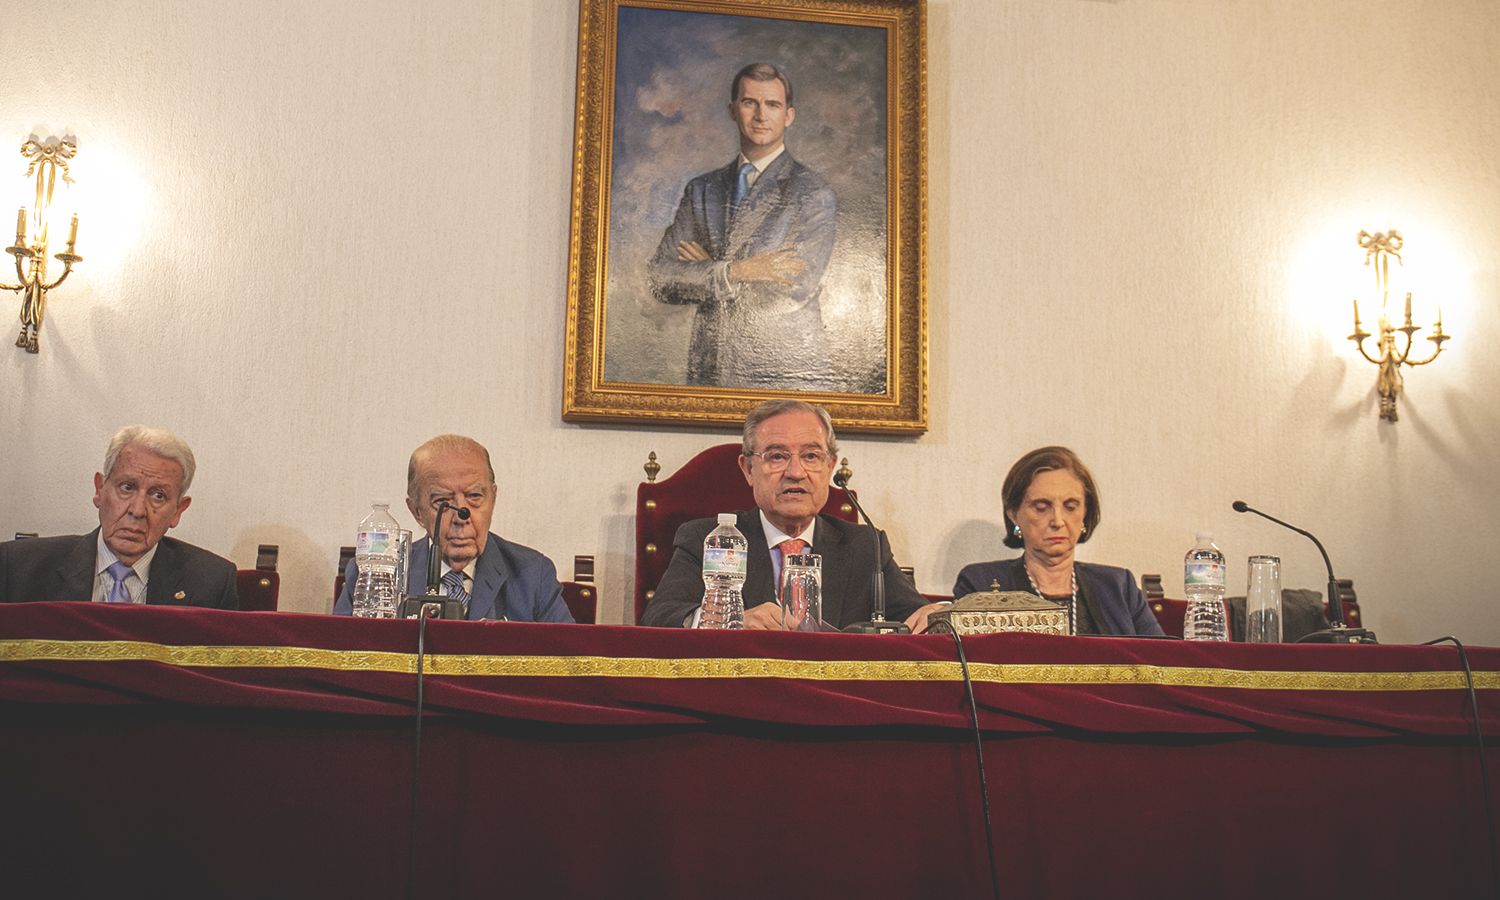 Mesa presidencial del acto del 75 aniversario con el presidente, presidente de honor, secretario y la académica Borrego Plá.